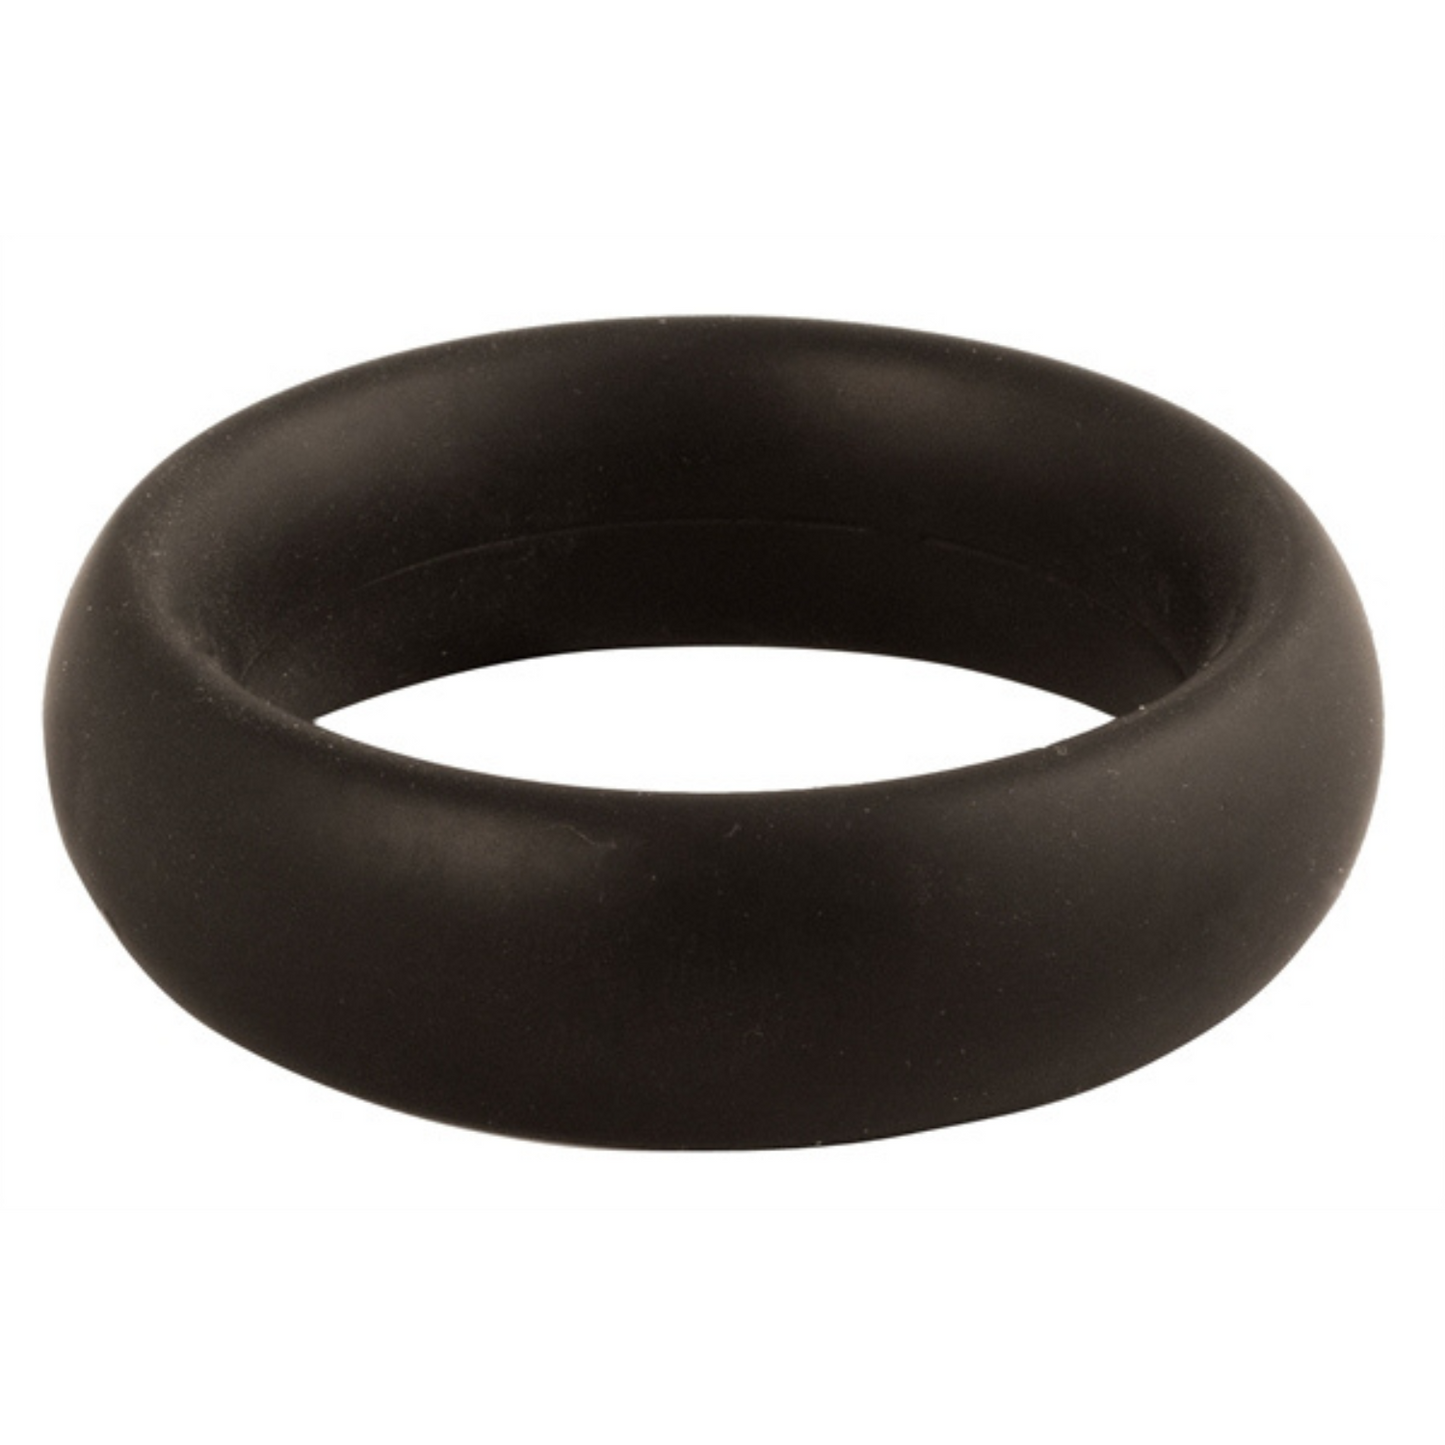 Zwarte donut cock ring met een diameter van 40 mm van Mister B, te koop bij Flavourez.